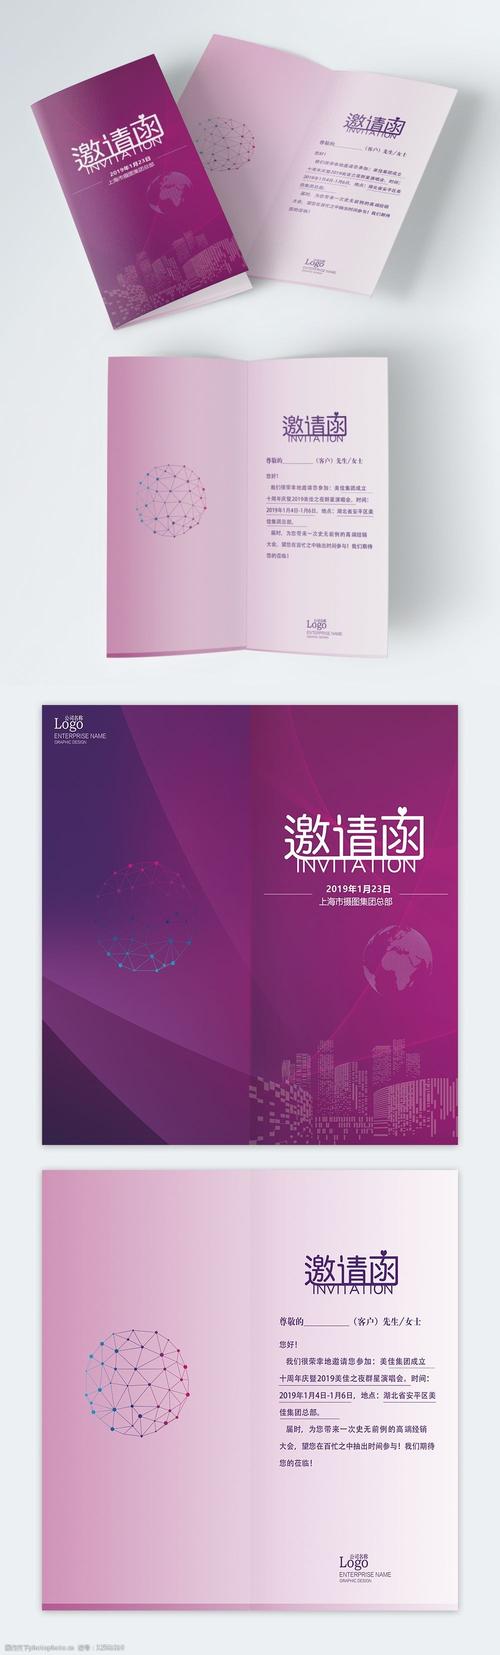 紫色炫彩企业活动邀请函